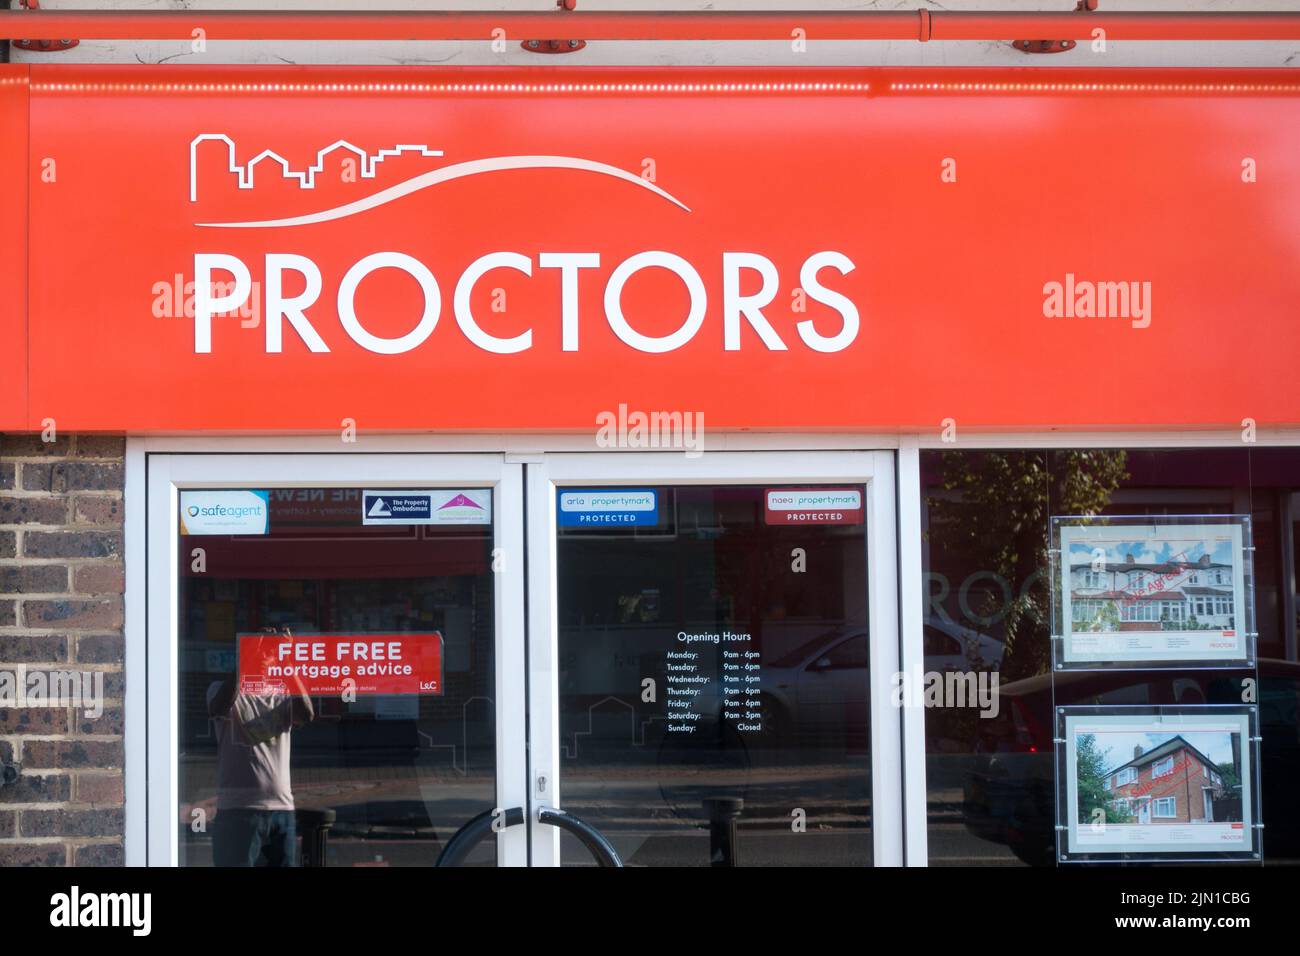 Proctors estate agent sign board Stock Photo